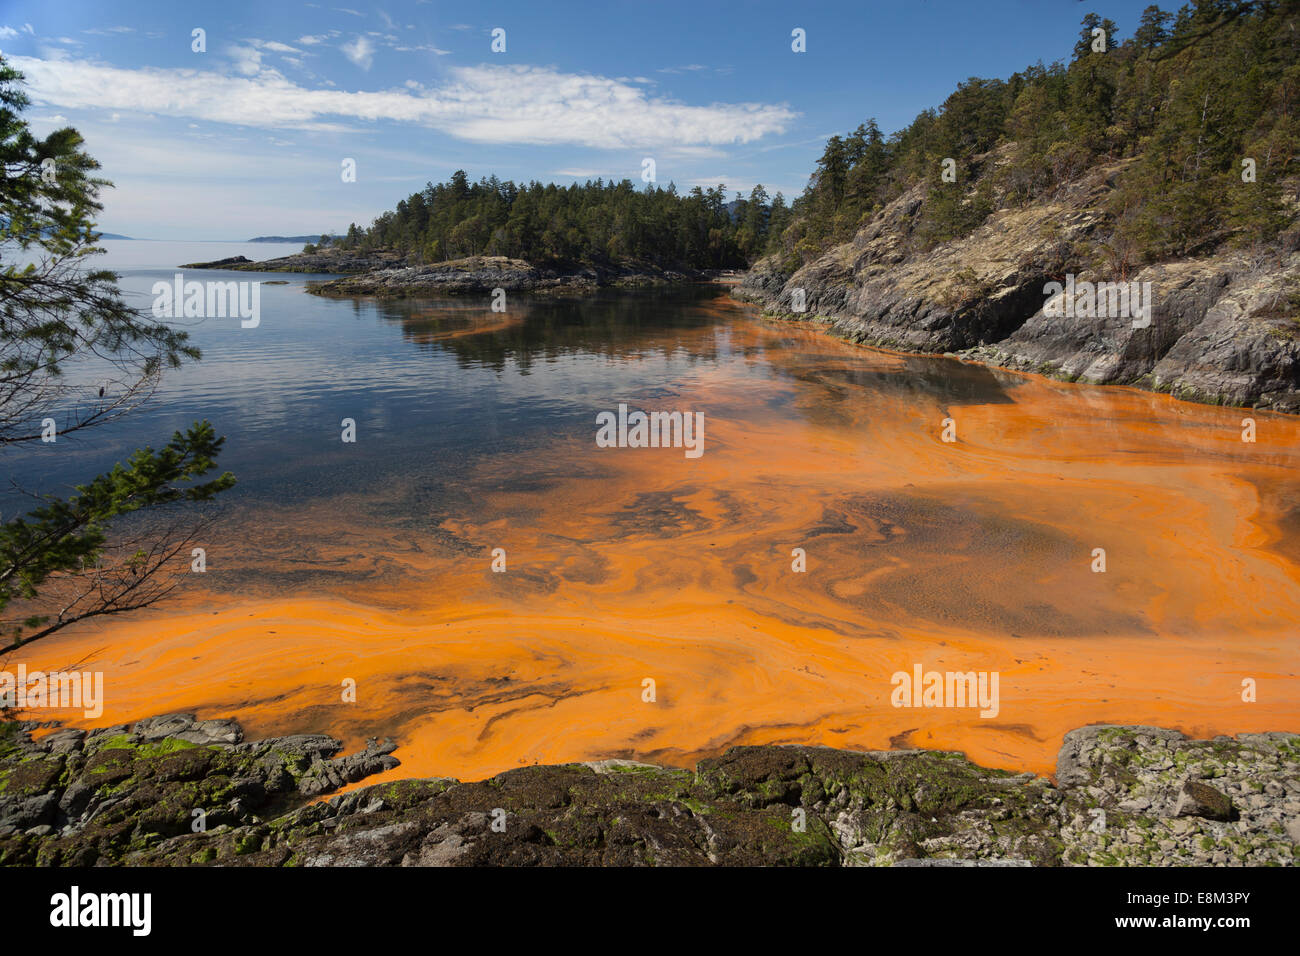 La prolifération des algues sur l'océan. À Sechelt en Colombie-Britannique sur la côte ouest du Canada une concentration d'algues rend l'eau orange. Banque D'Images